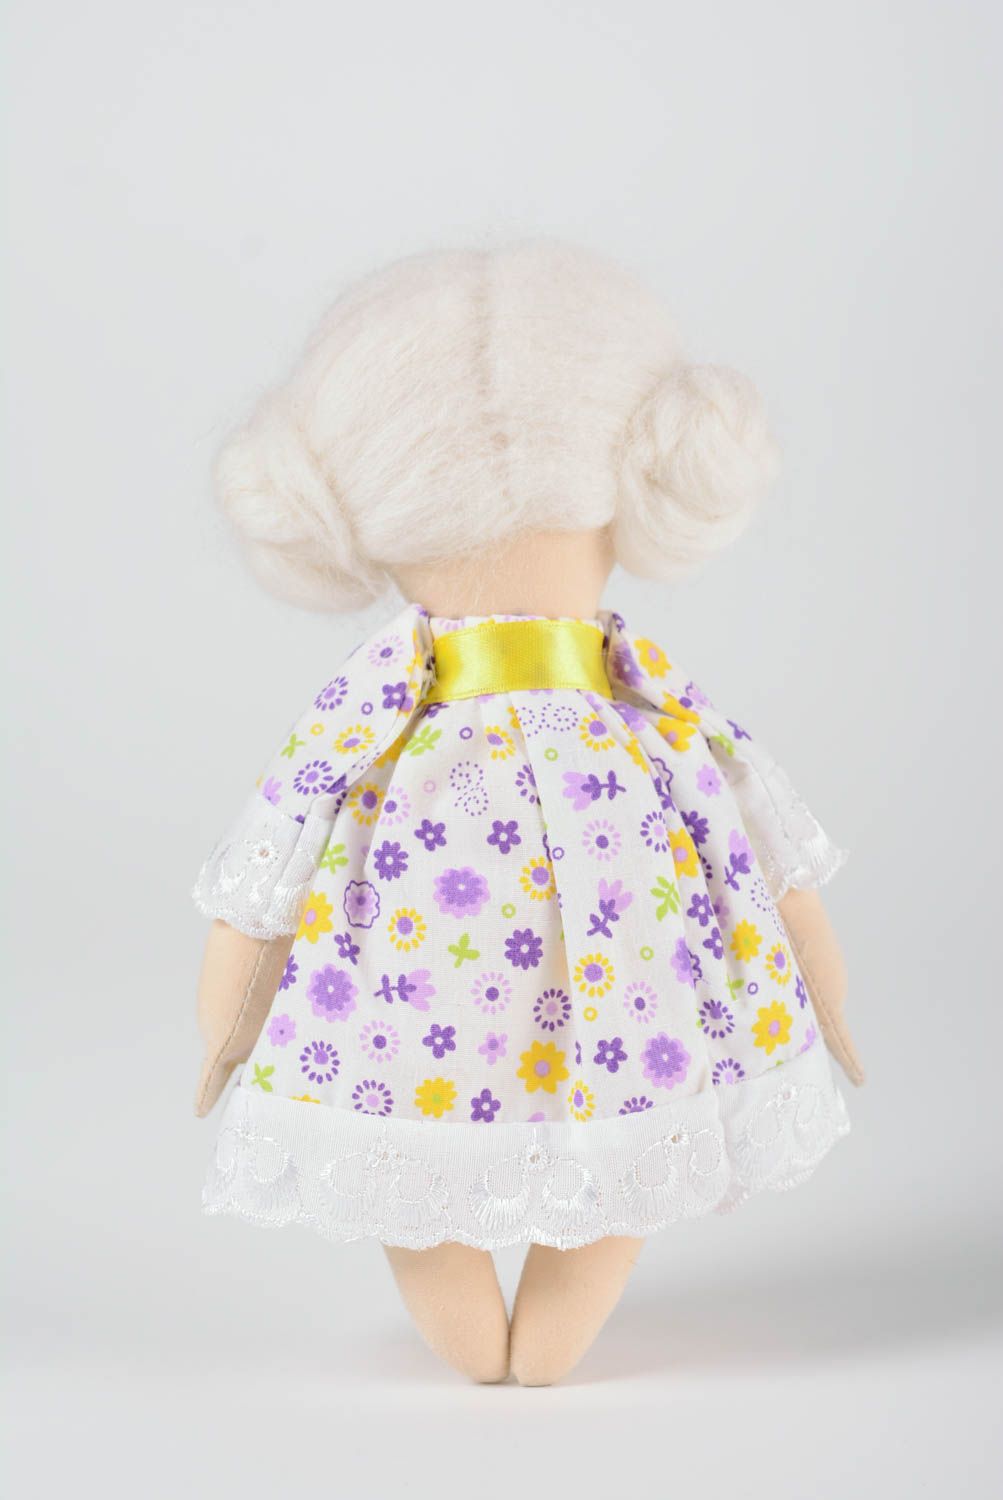 Мягкая кукла ручной работы в платье из хлопка расписная красивая для девочки фото 4